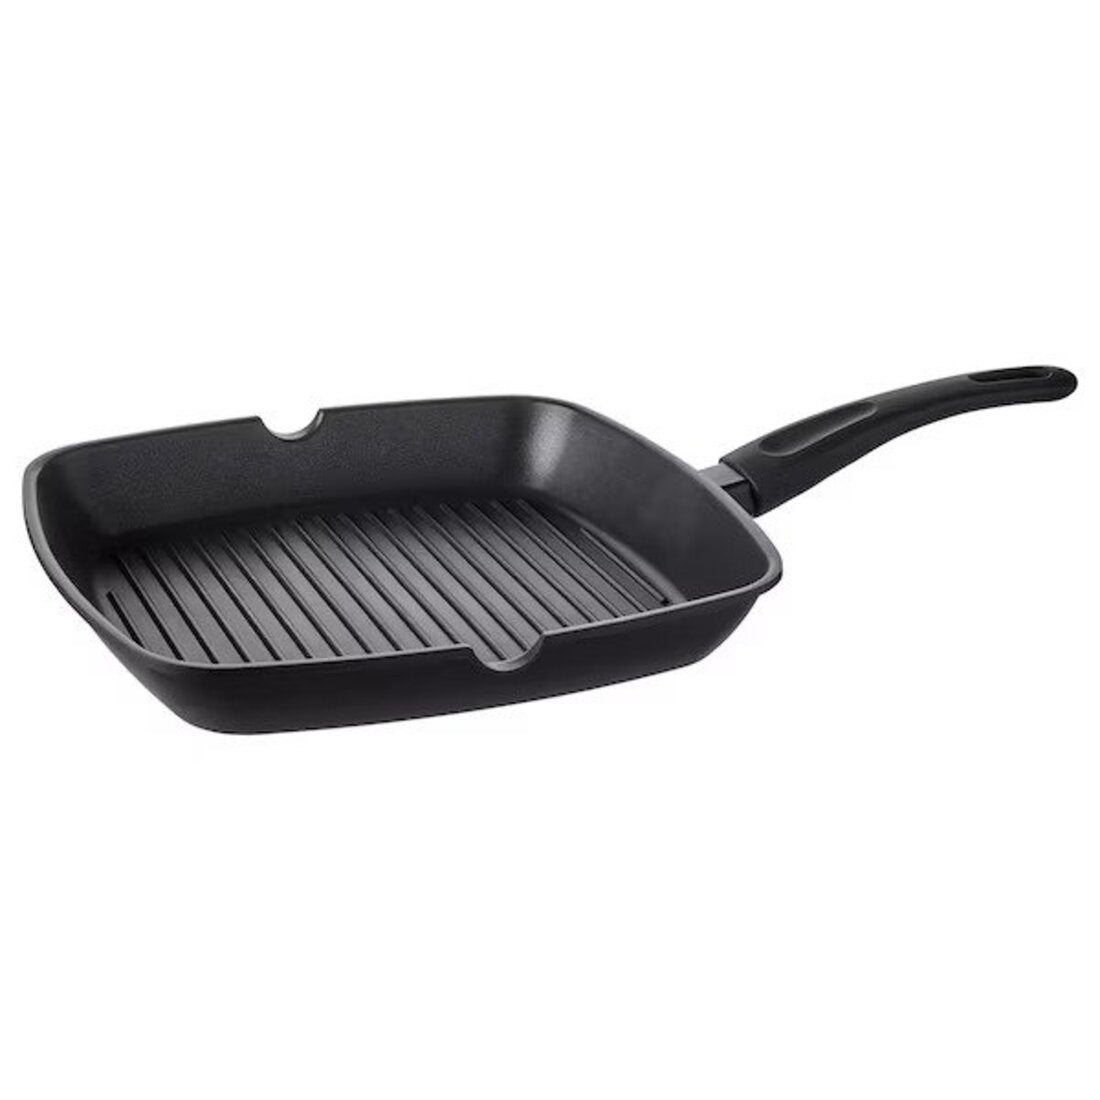 TAGGHAJ Frying pan, non-stick coating black, 9 - IKEA